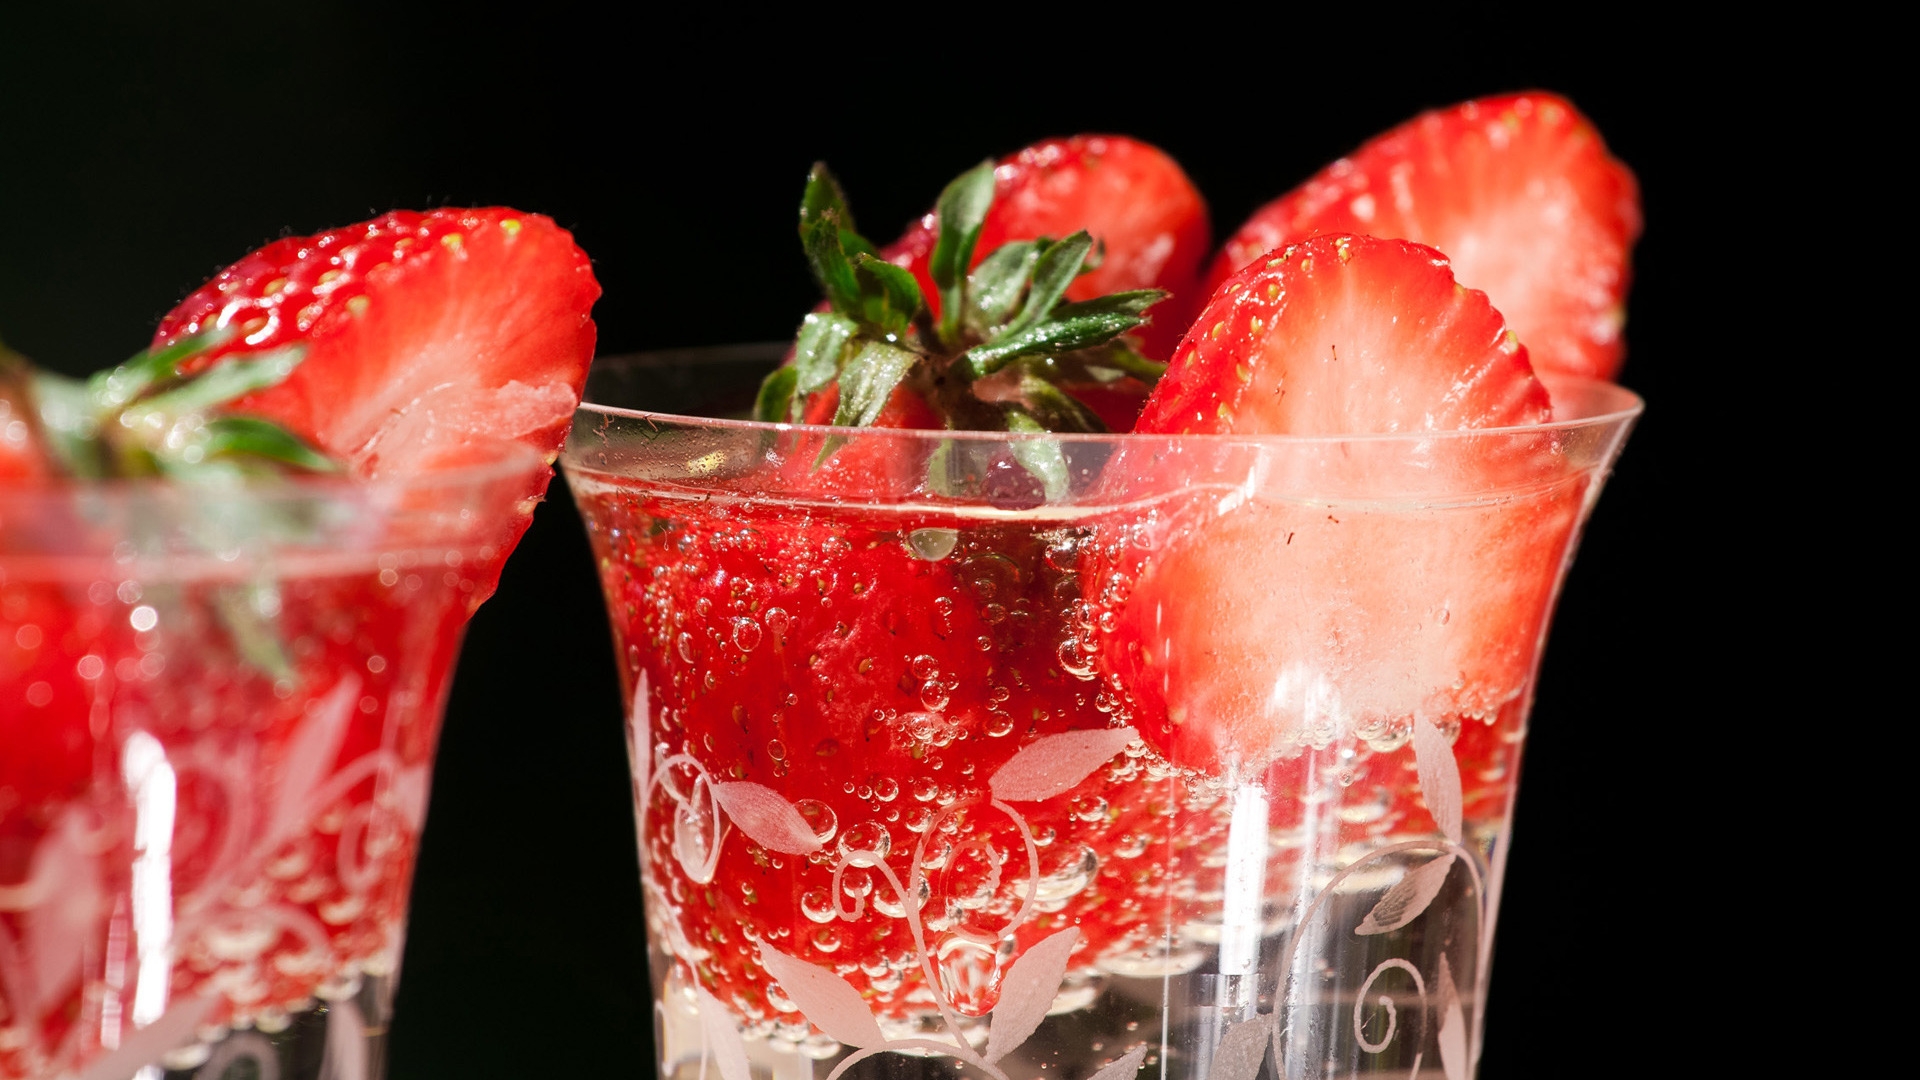 Fresh strawberries in glasses for 1920 x 1080 HDTV 1080p resolution